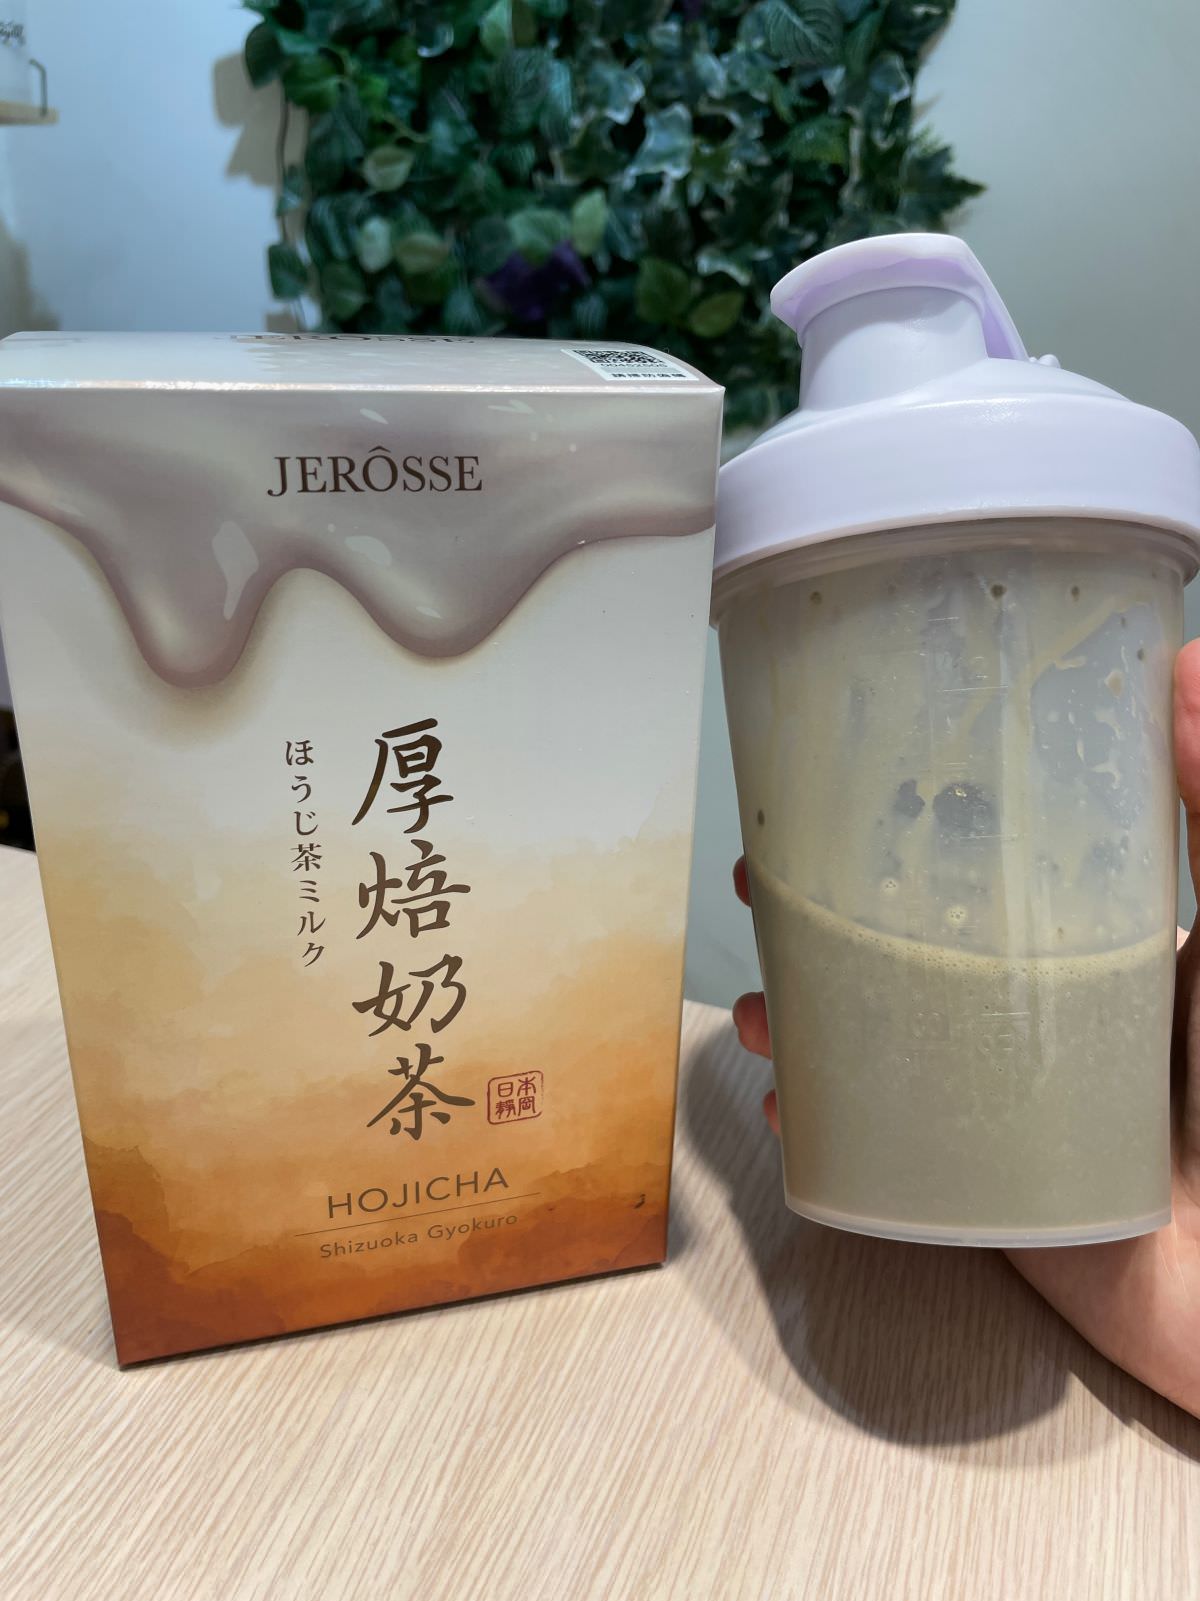 JEROSSE婕樂纖 輕卡肽纖飲─厚焙奶茶風味